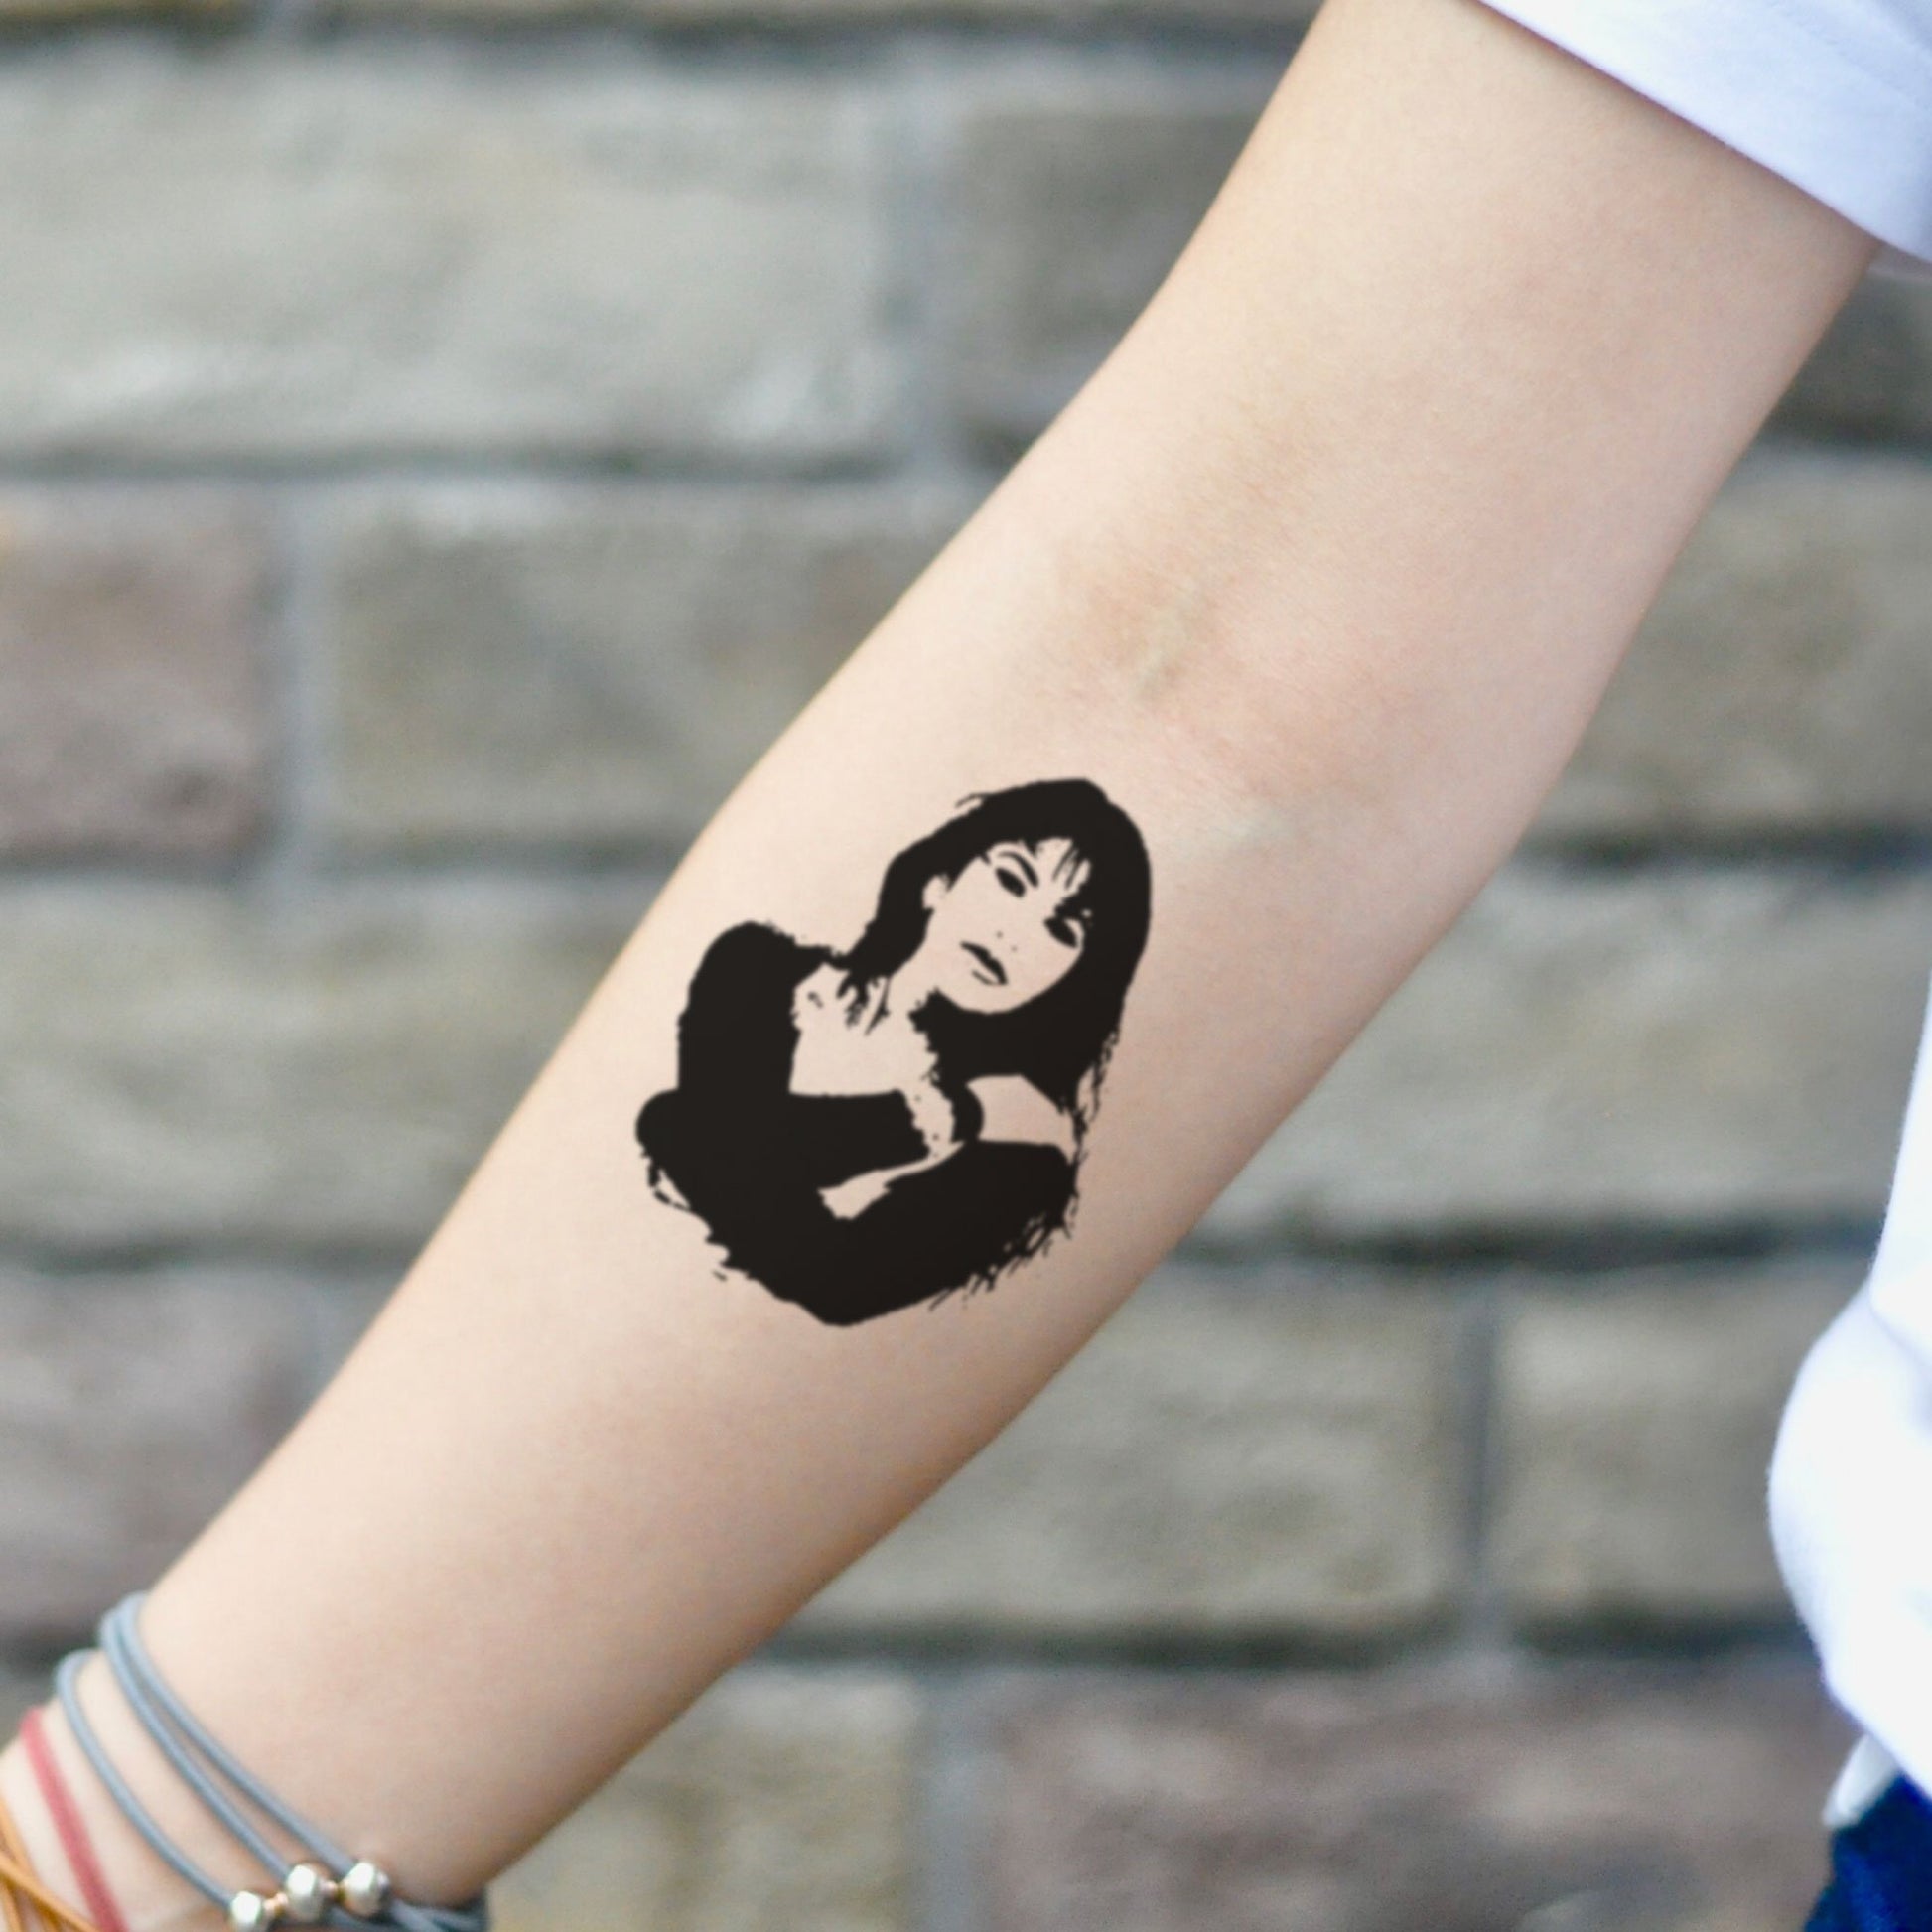 fake small selena quintanilla portrait temporary tattoo sticker design idea on inner arm